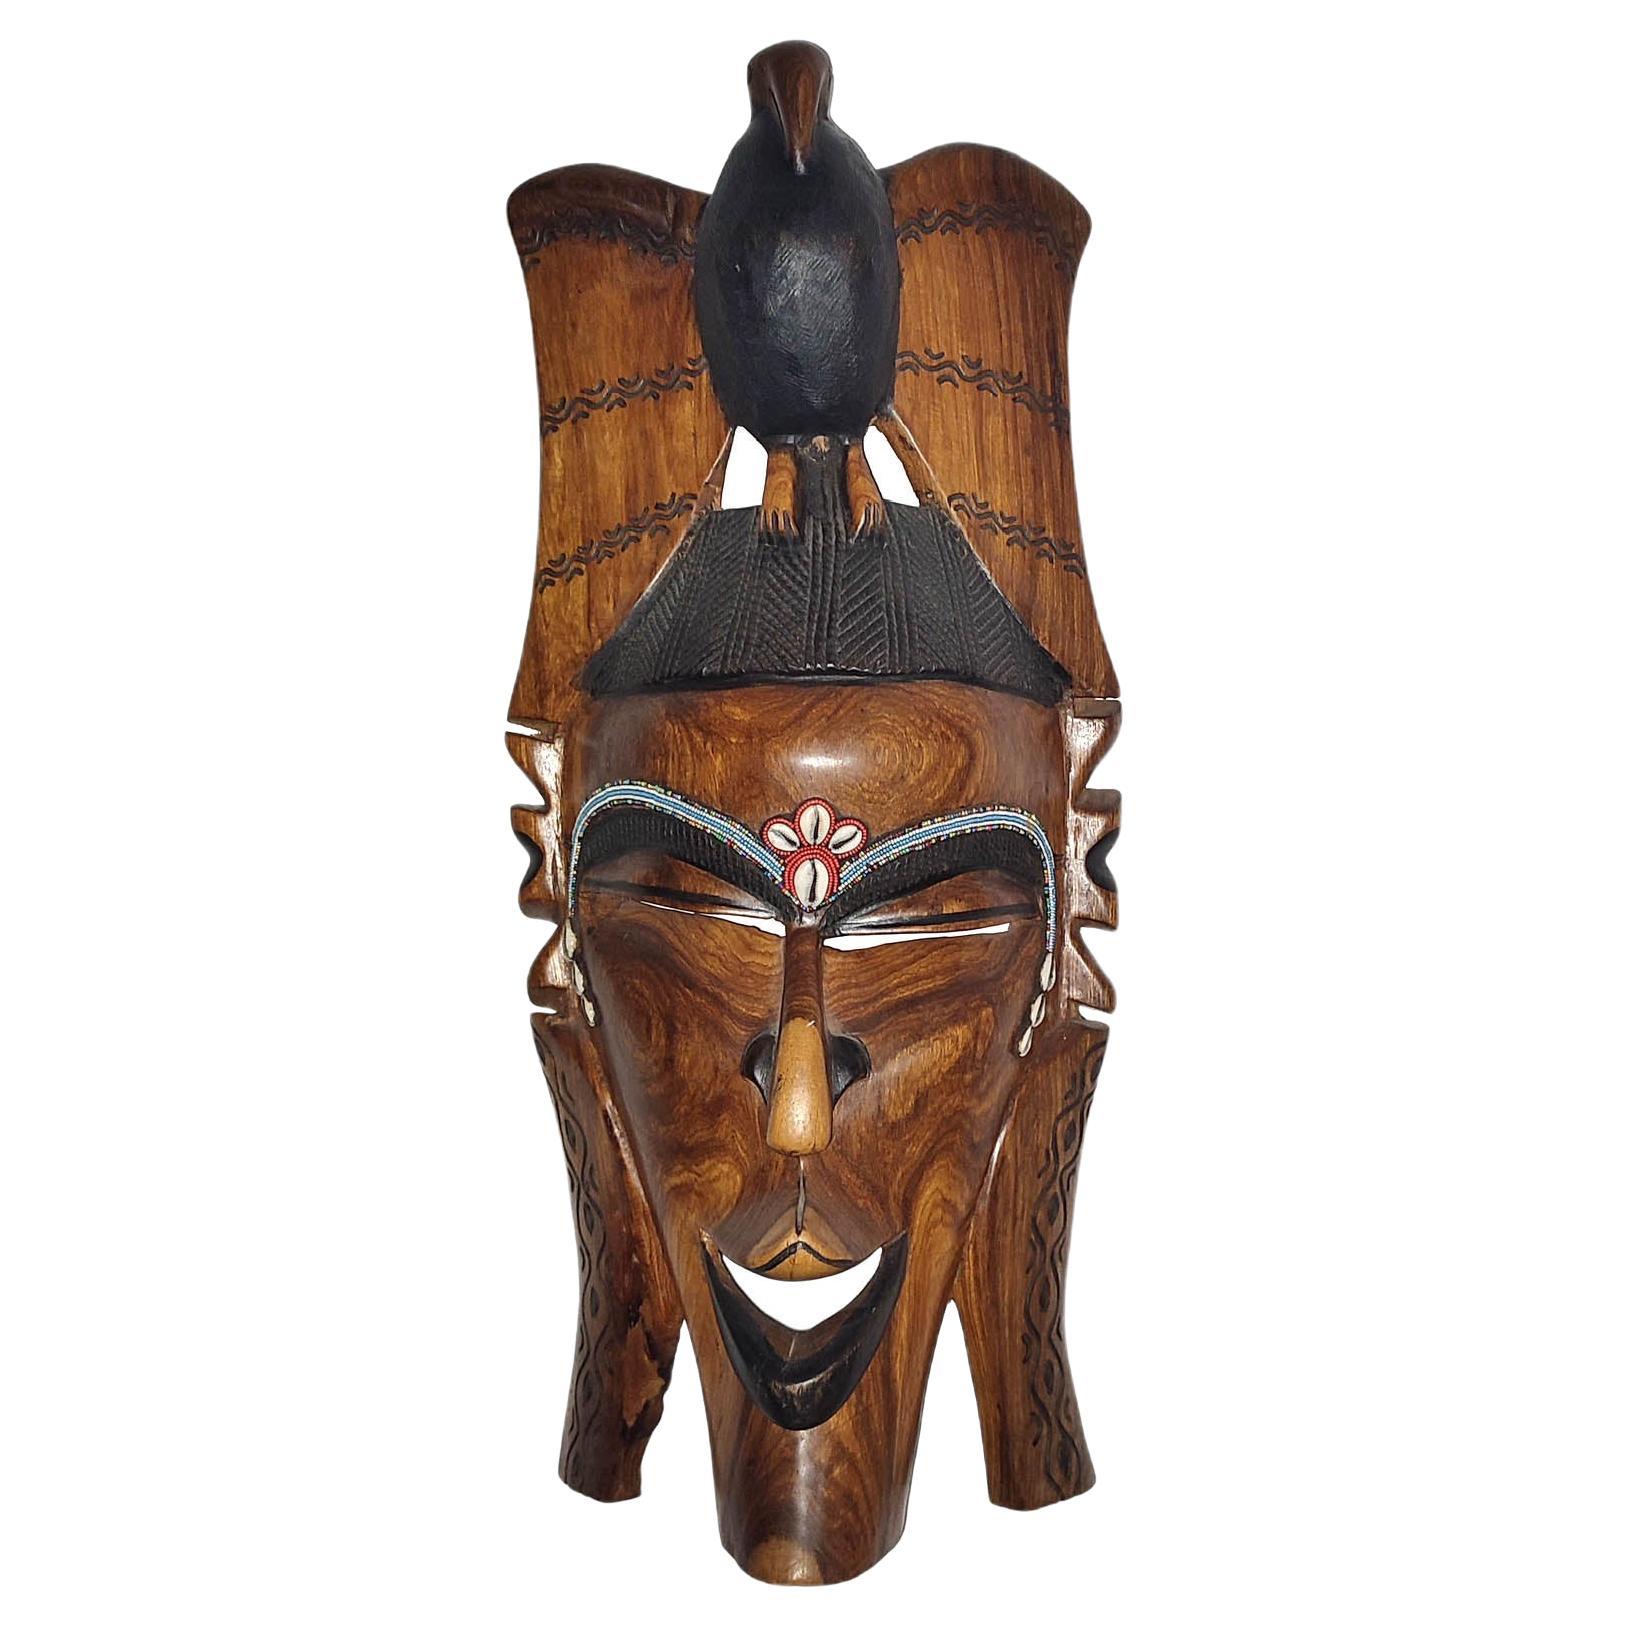 Grand masque tribal africain mural de 2 pieds de haut en bois sculpté à la main